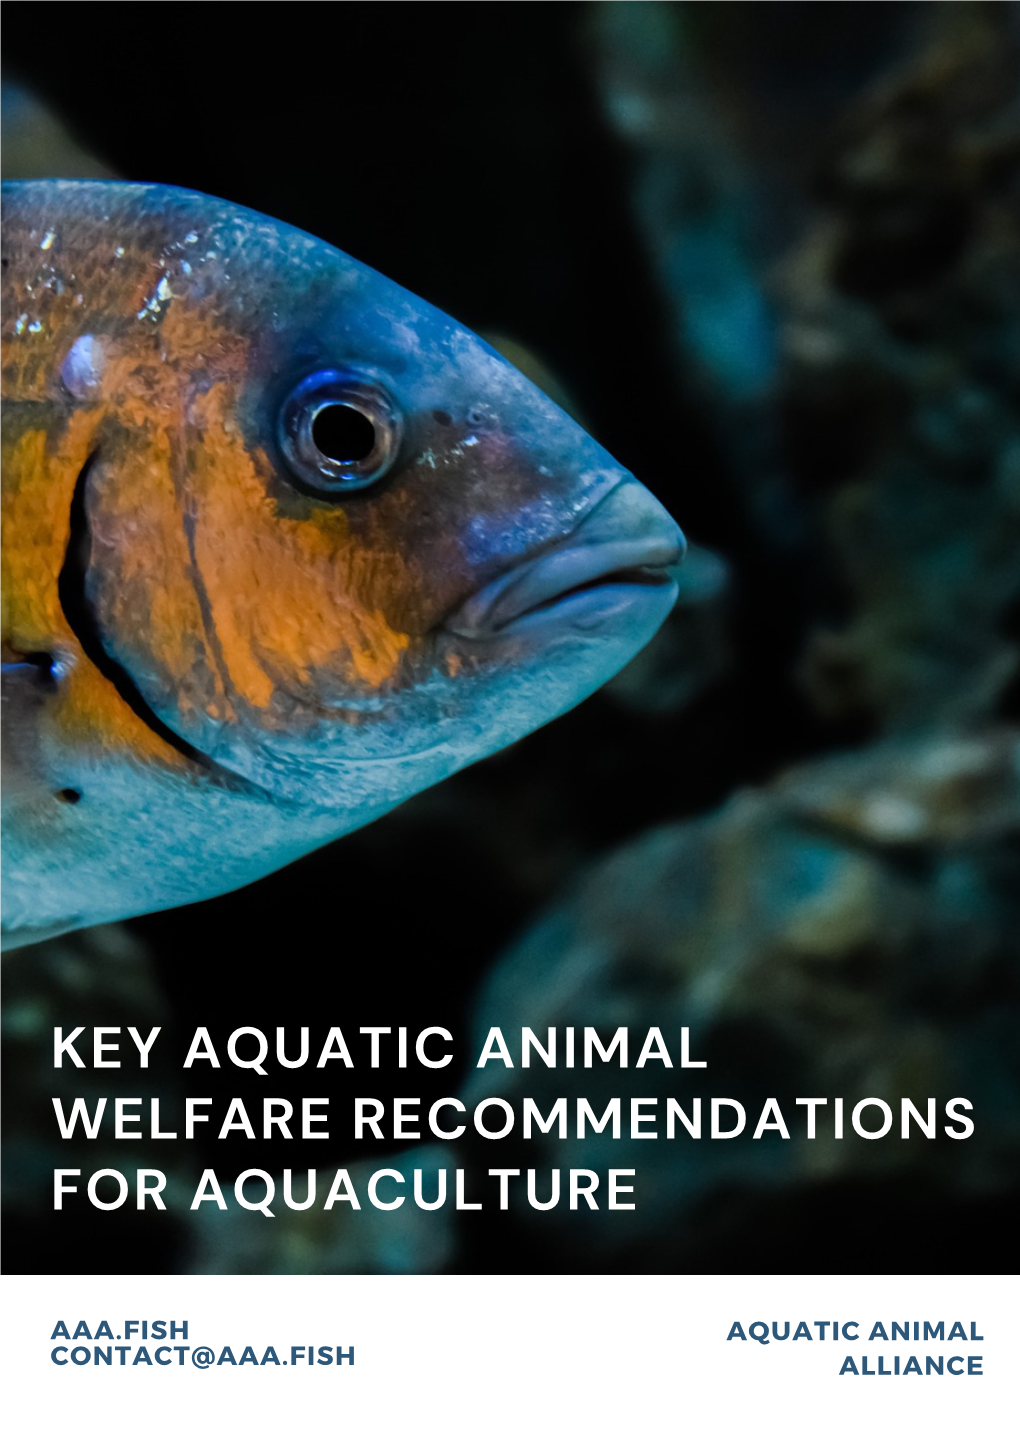 Copy of Key Aquatic Animal Welfare Recommendations for Aquaculture